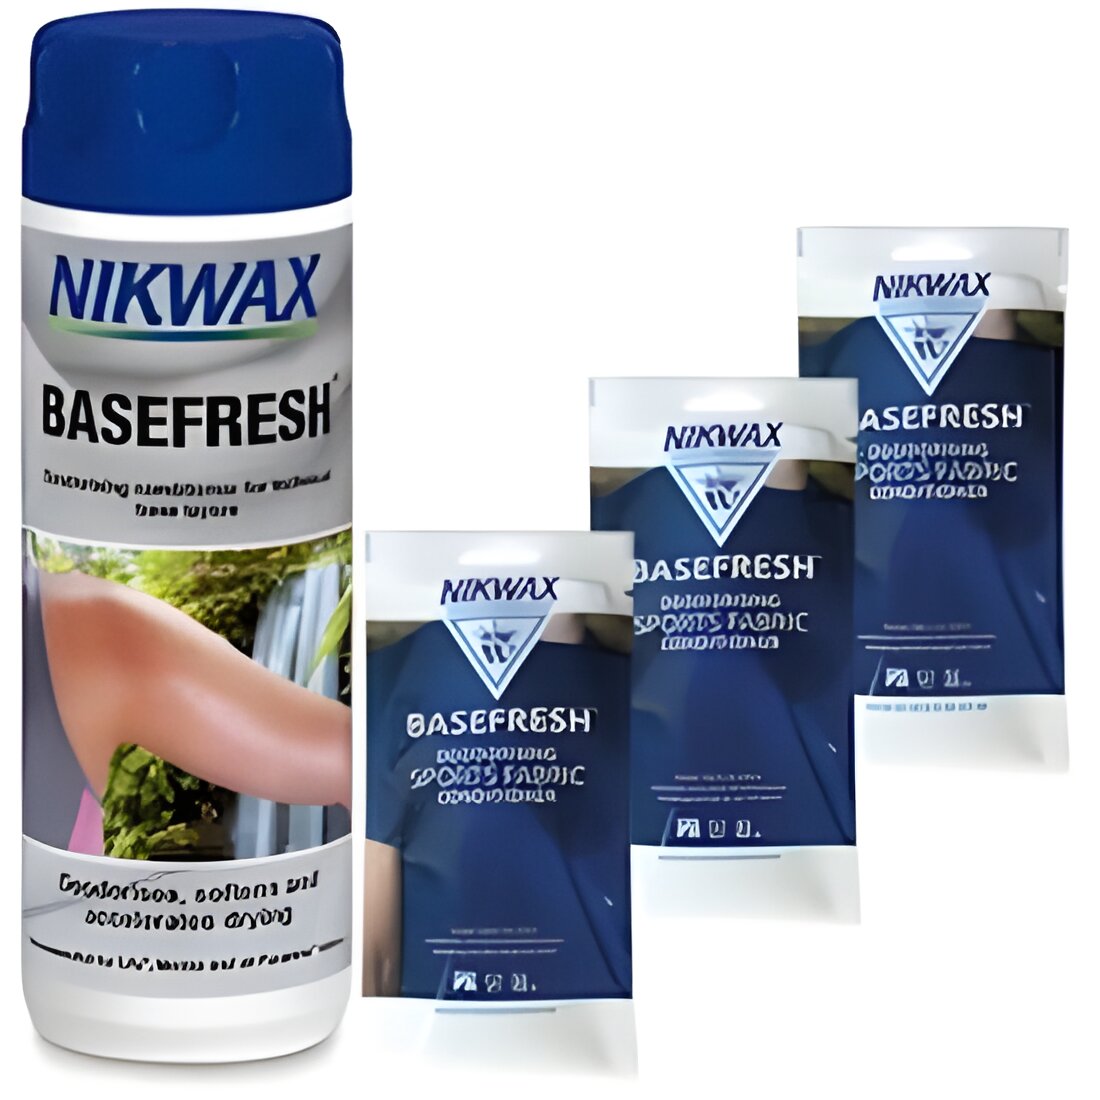 Free Nikwax BaseFresh Deodorising Conditioner